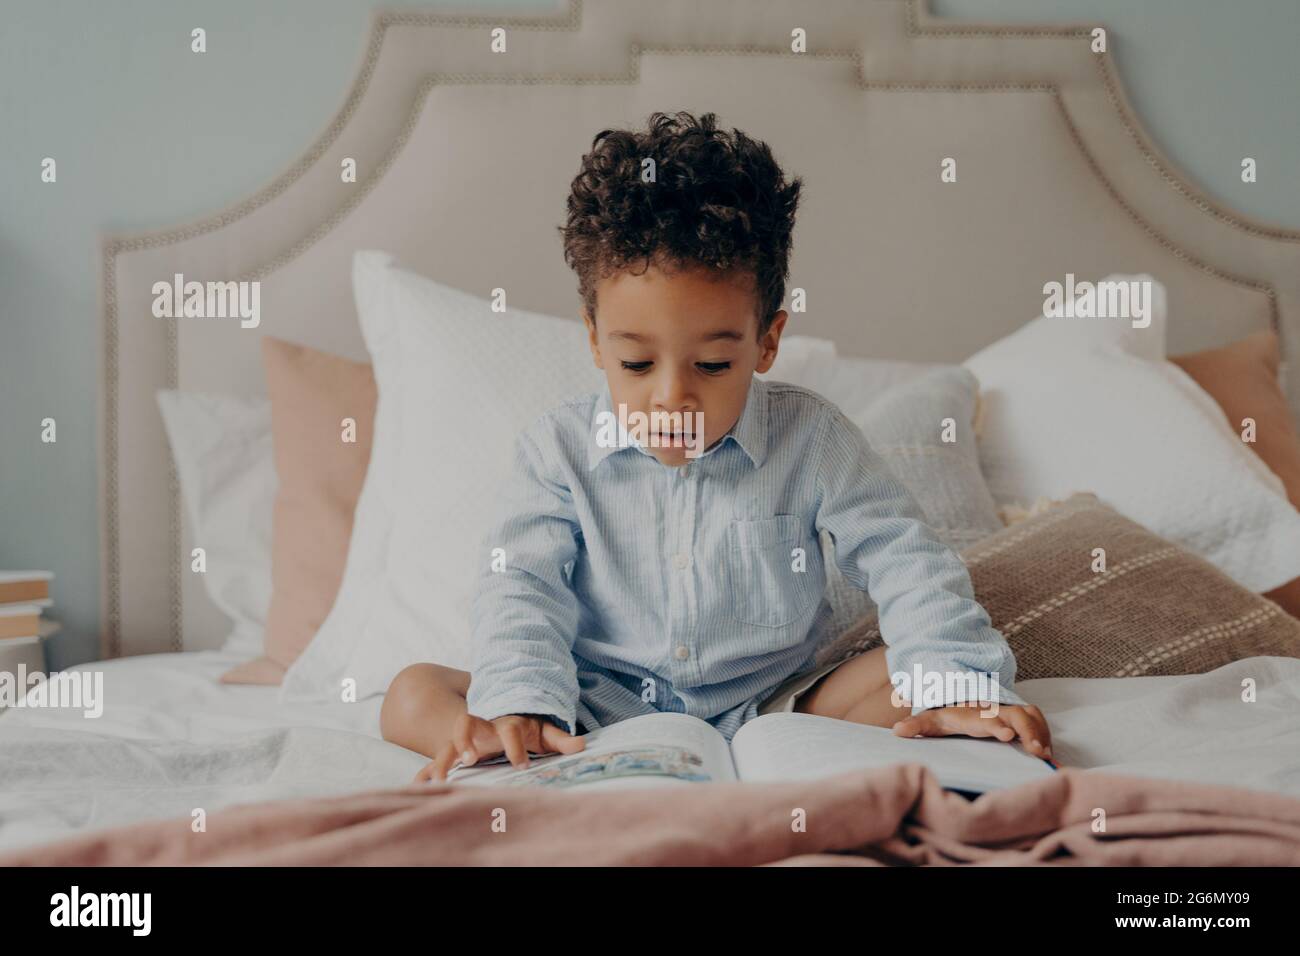 Faszinierte afro amerikanische Vorschulkinder, die bunte Bilder im Inneren des Buches betrachten, während sie auf einem großen Bett sitzen Stockfoto